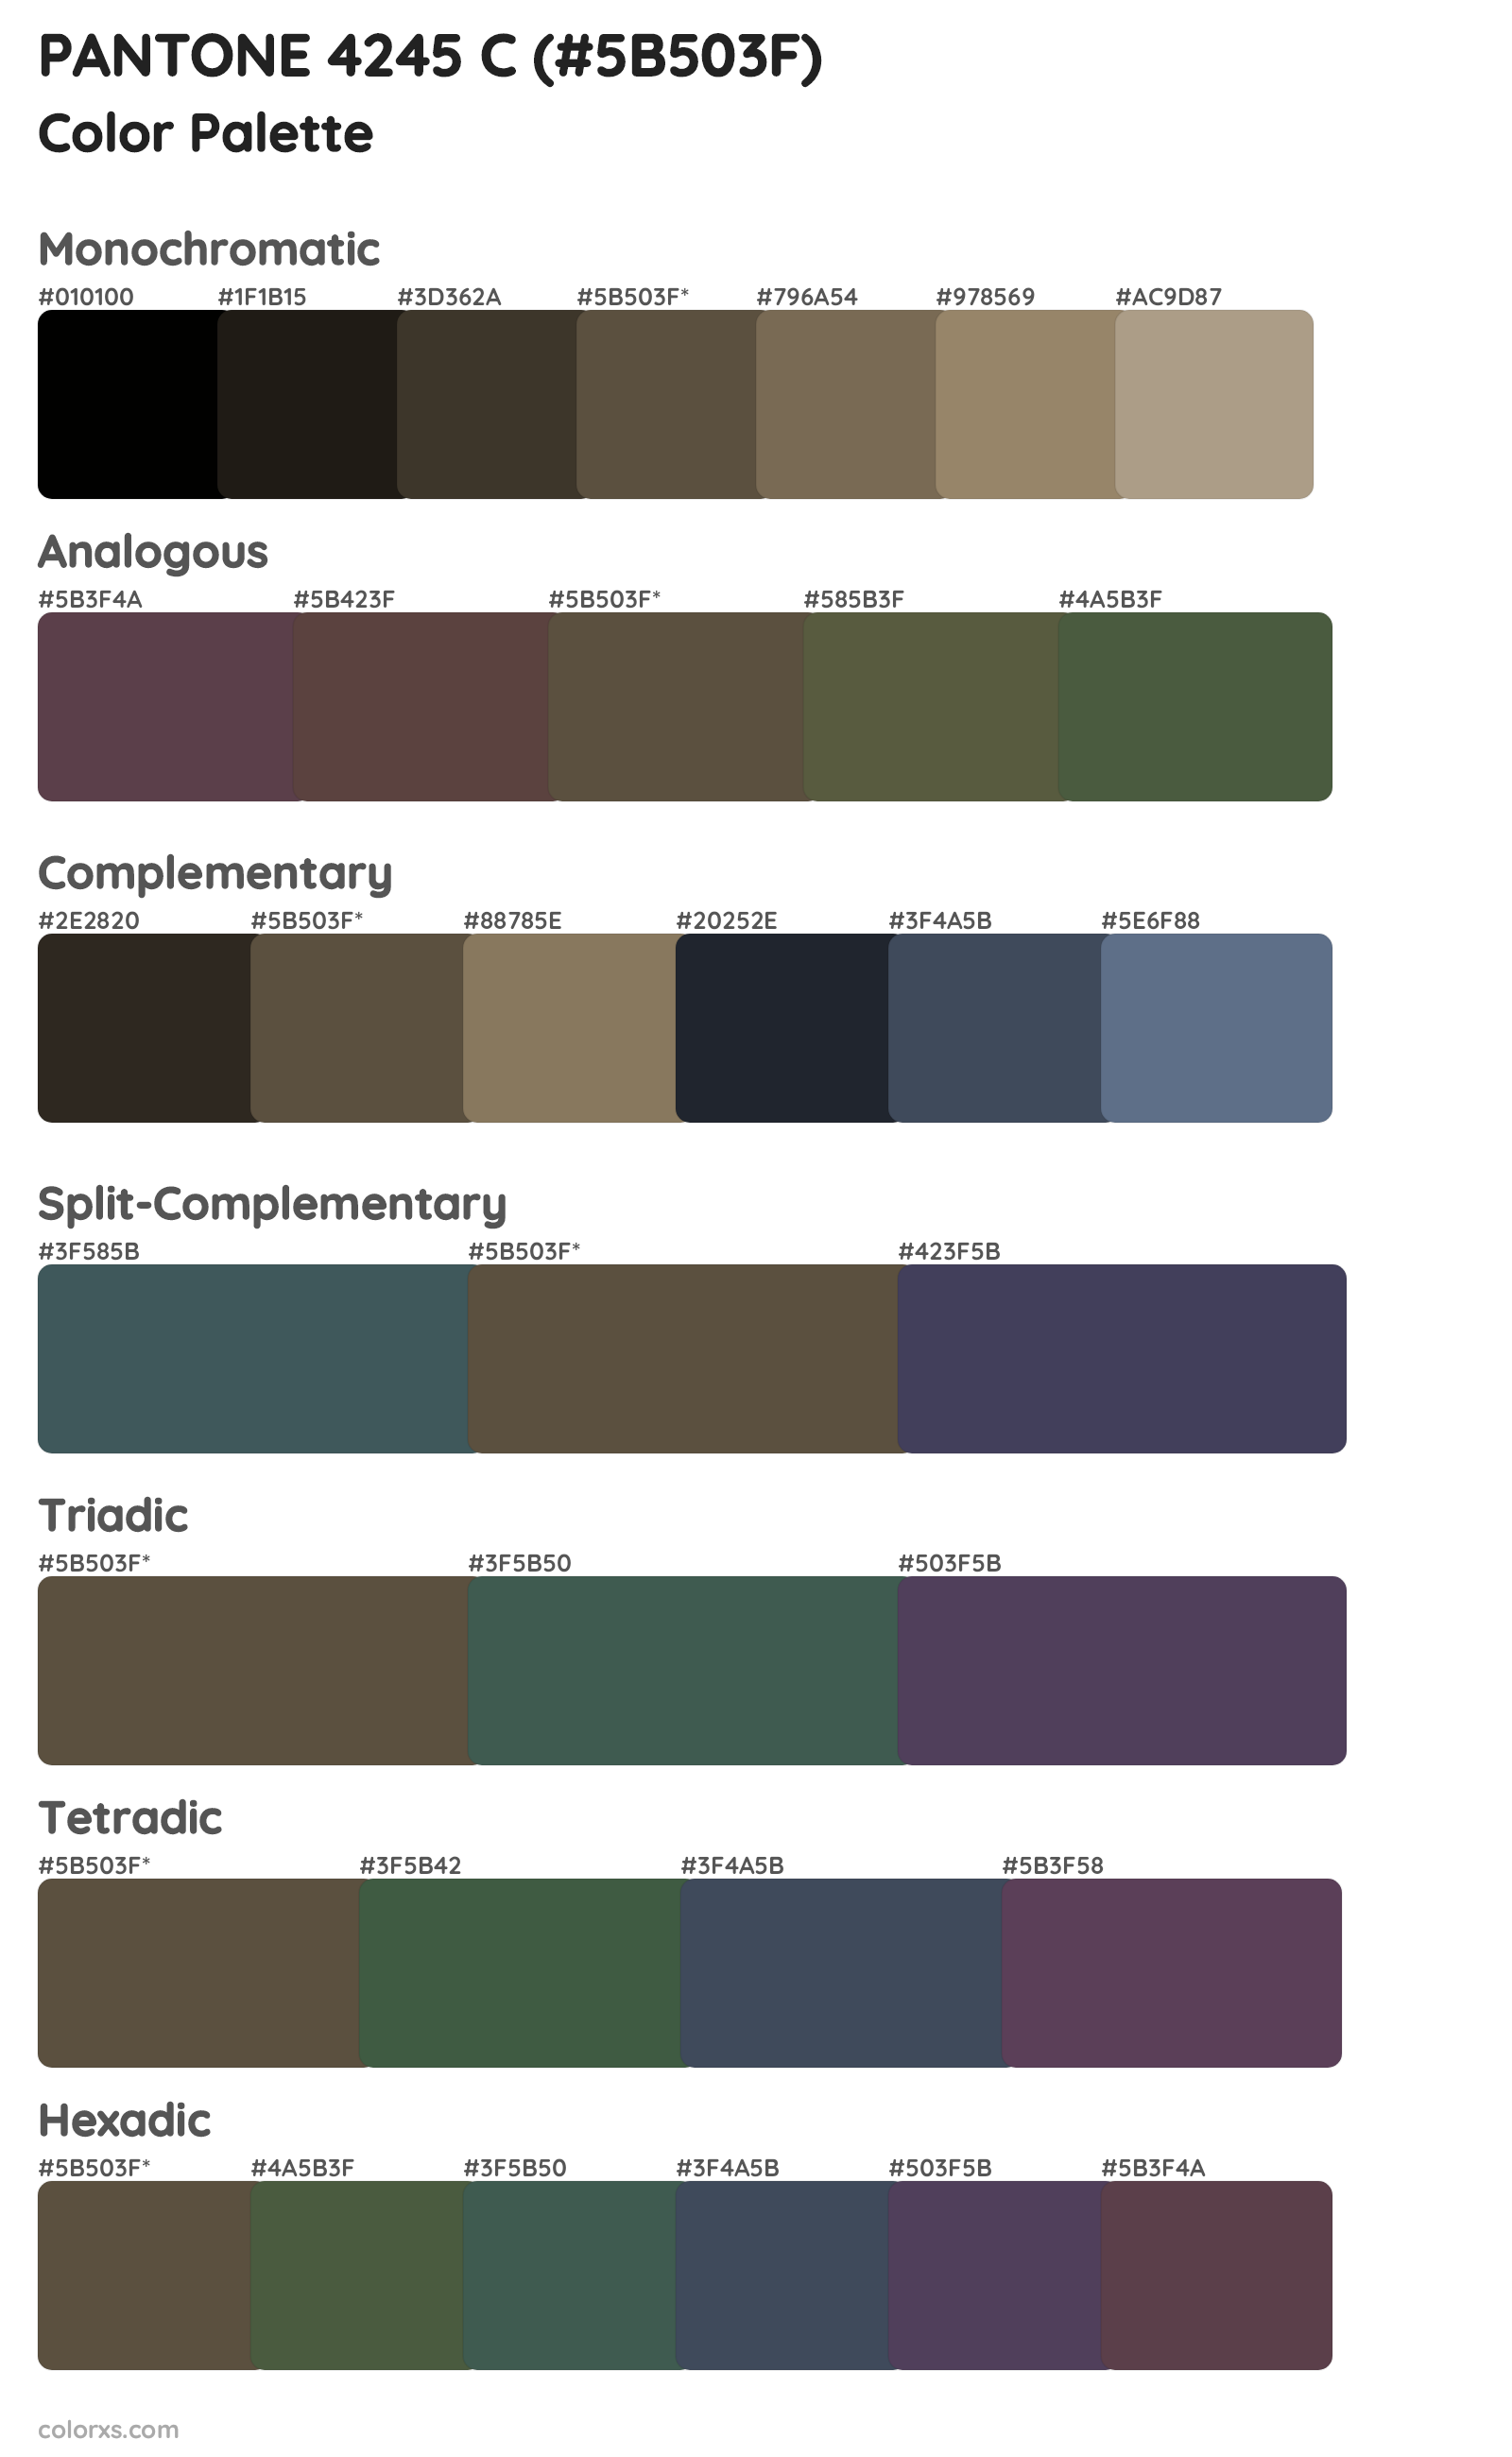 PANTONE 4245 C Color Scheme Palettes